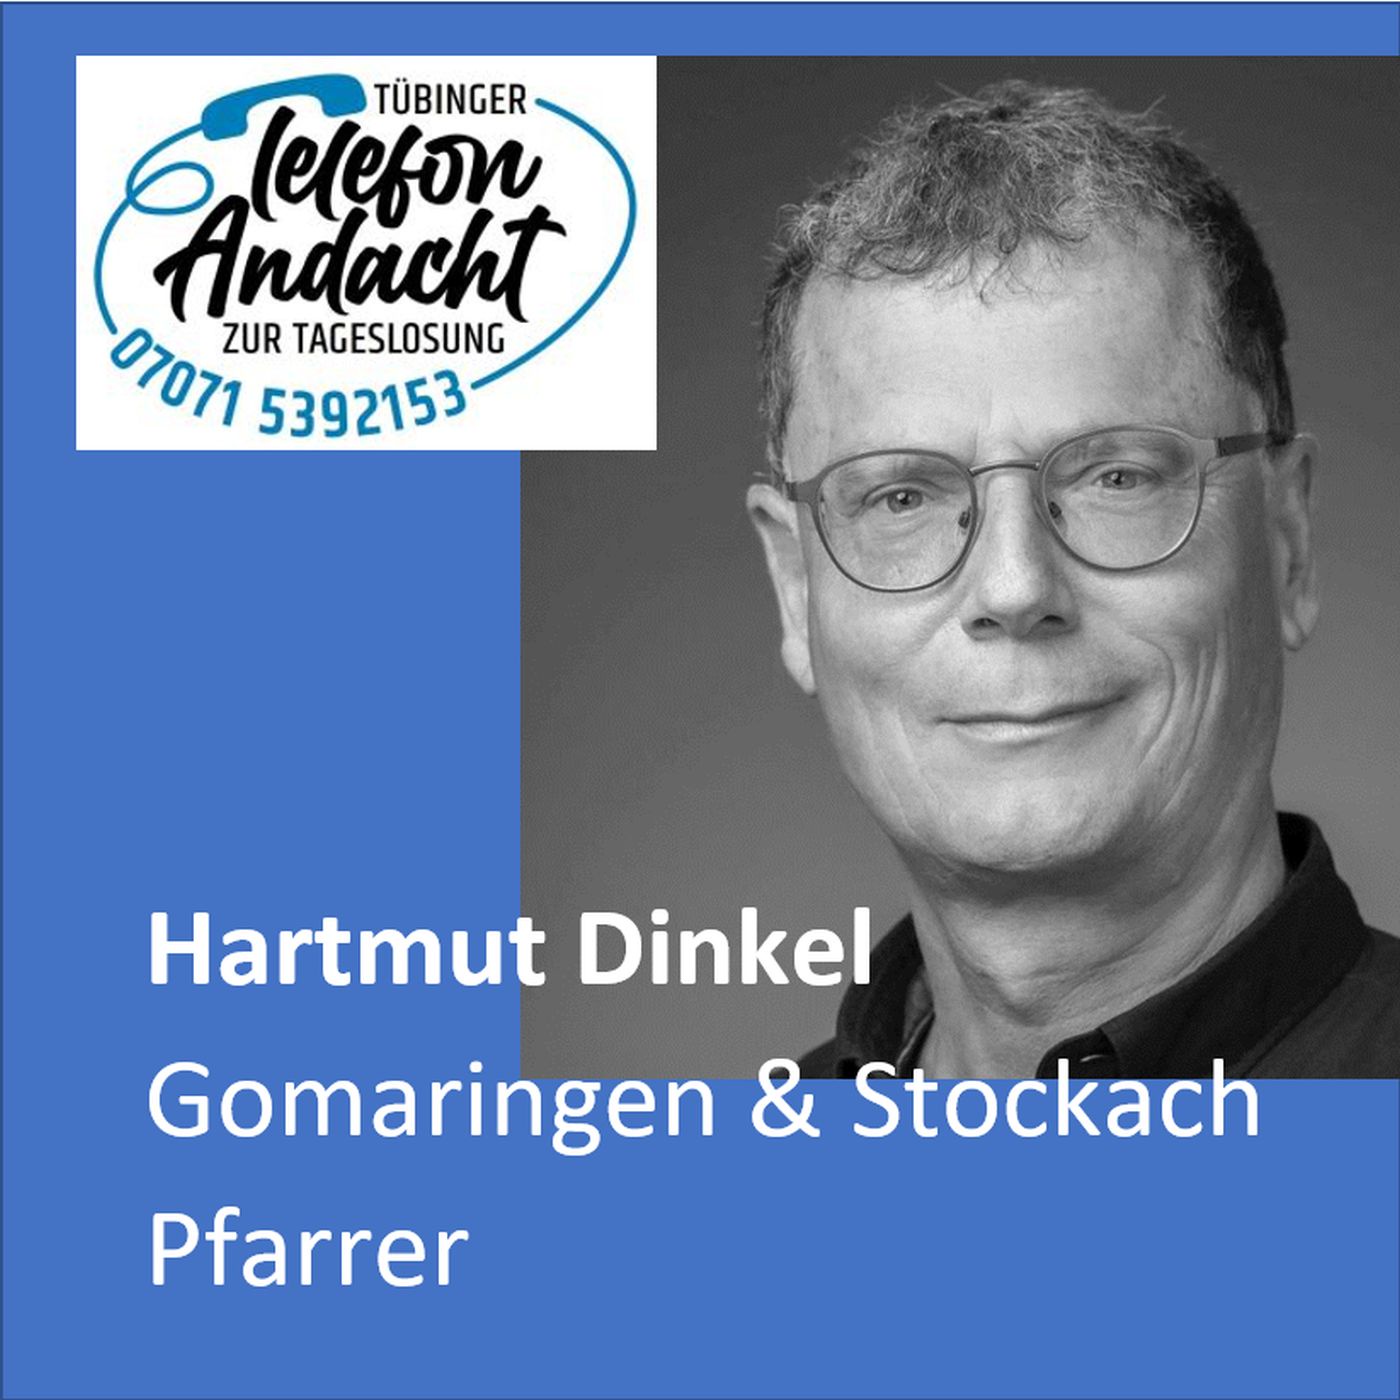 24 05 18 Hartmut Dinkel